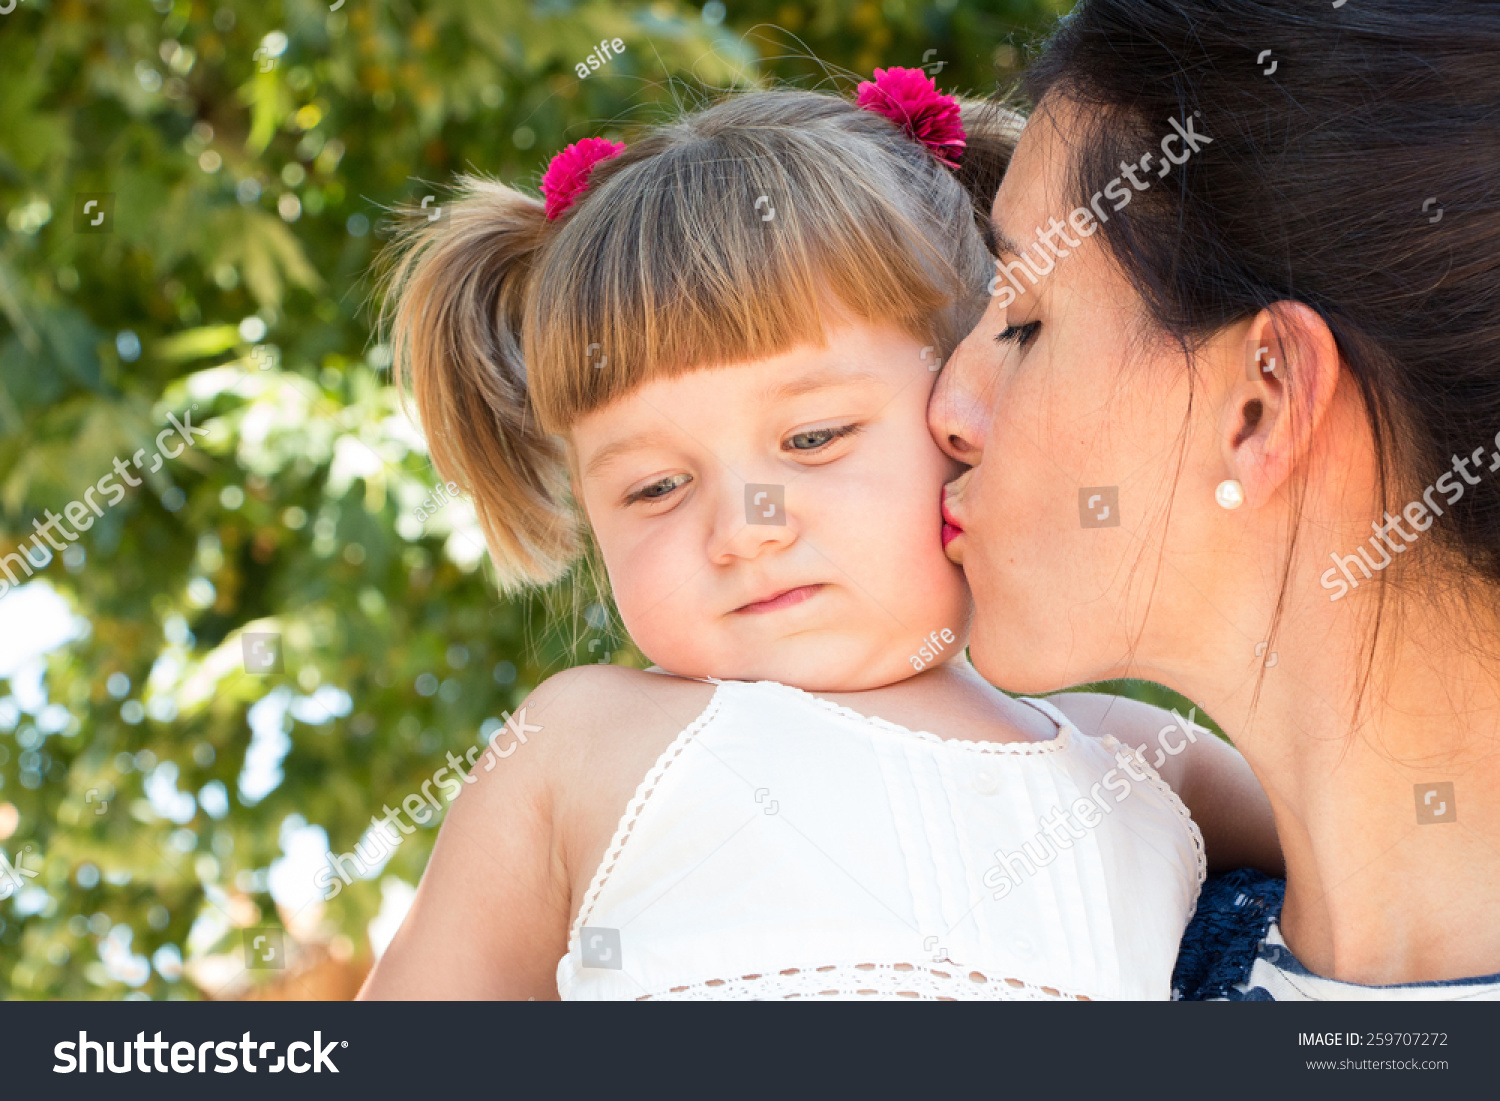 Поцелую маму в этот славный день. Детский поцелуй в губы. Мама целует дочь. Поцелуй мамы. Девочка целует маму.